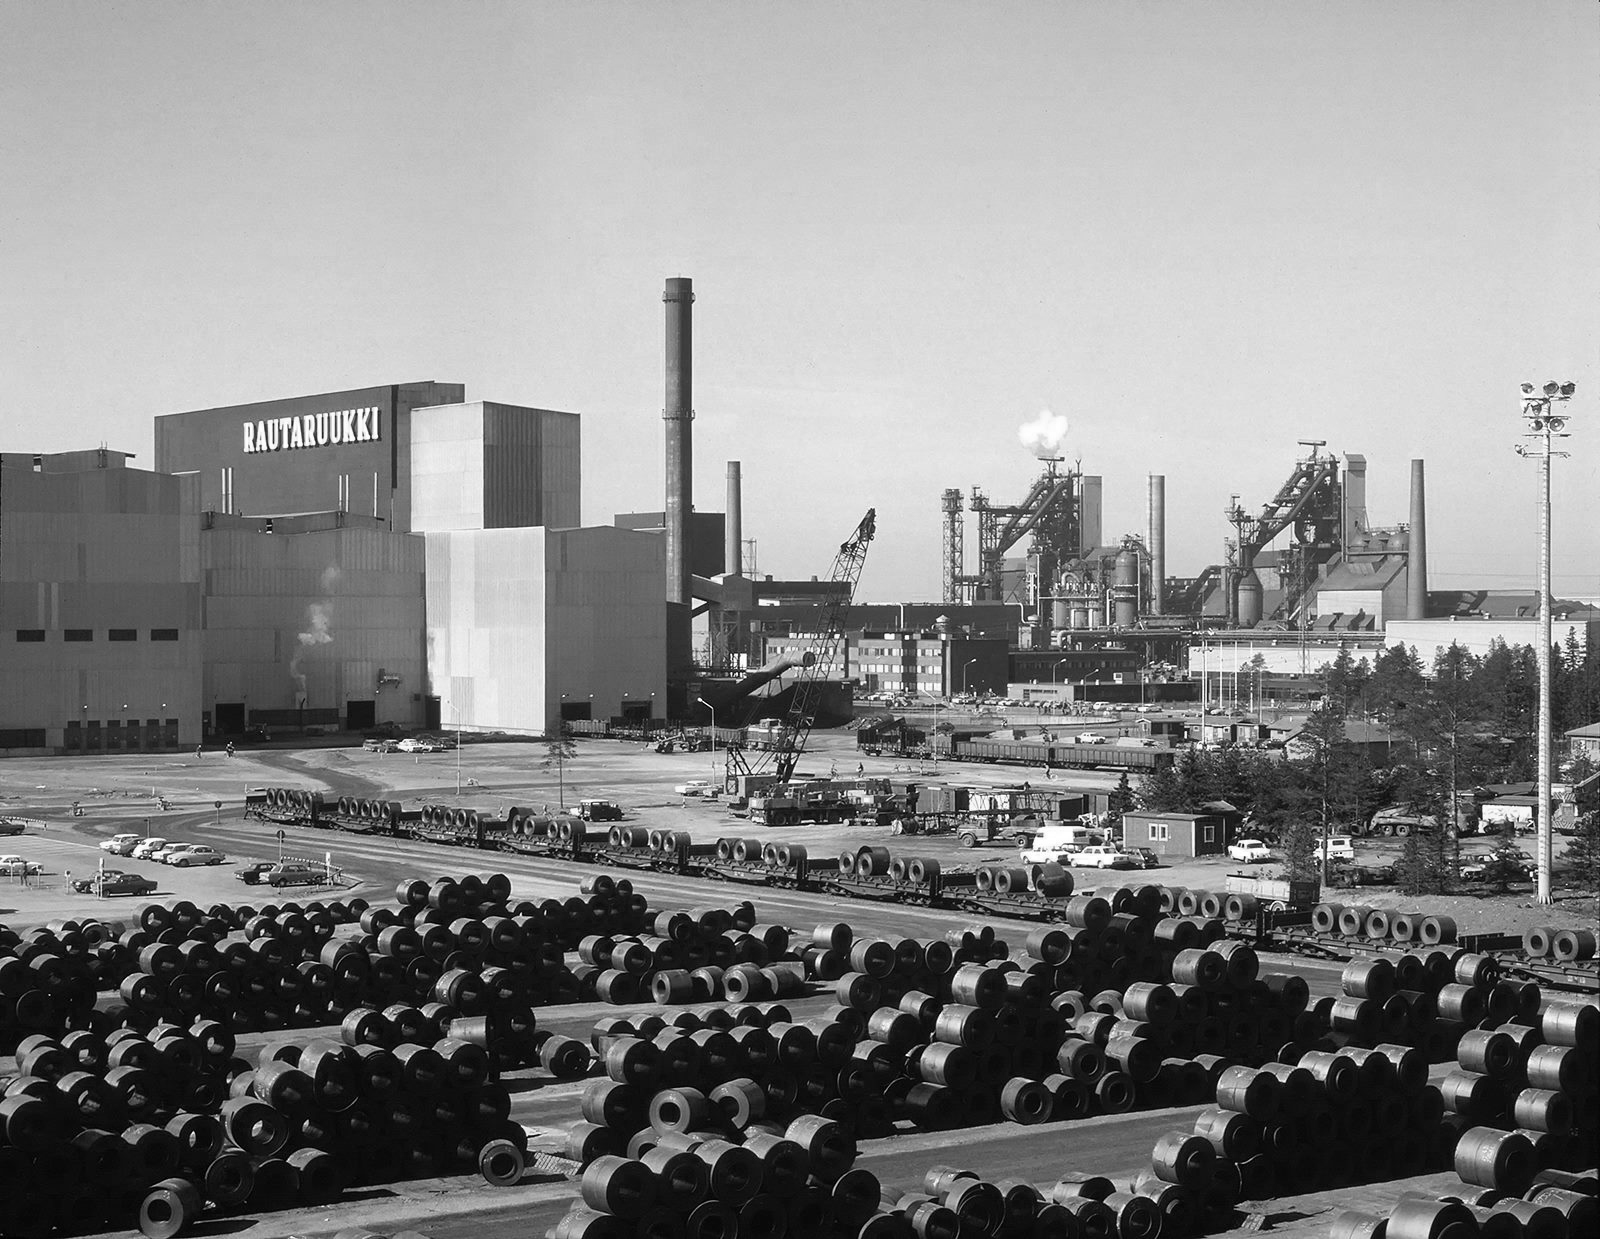 Завод Раутарууккі в Рааге наприкінці 1970-х років – FinnMetal